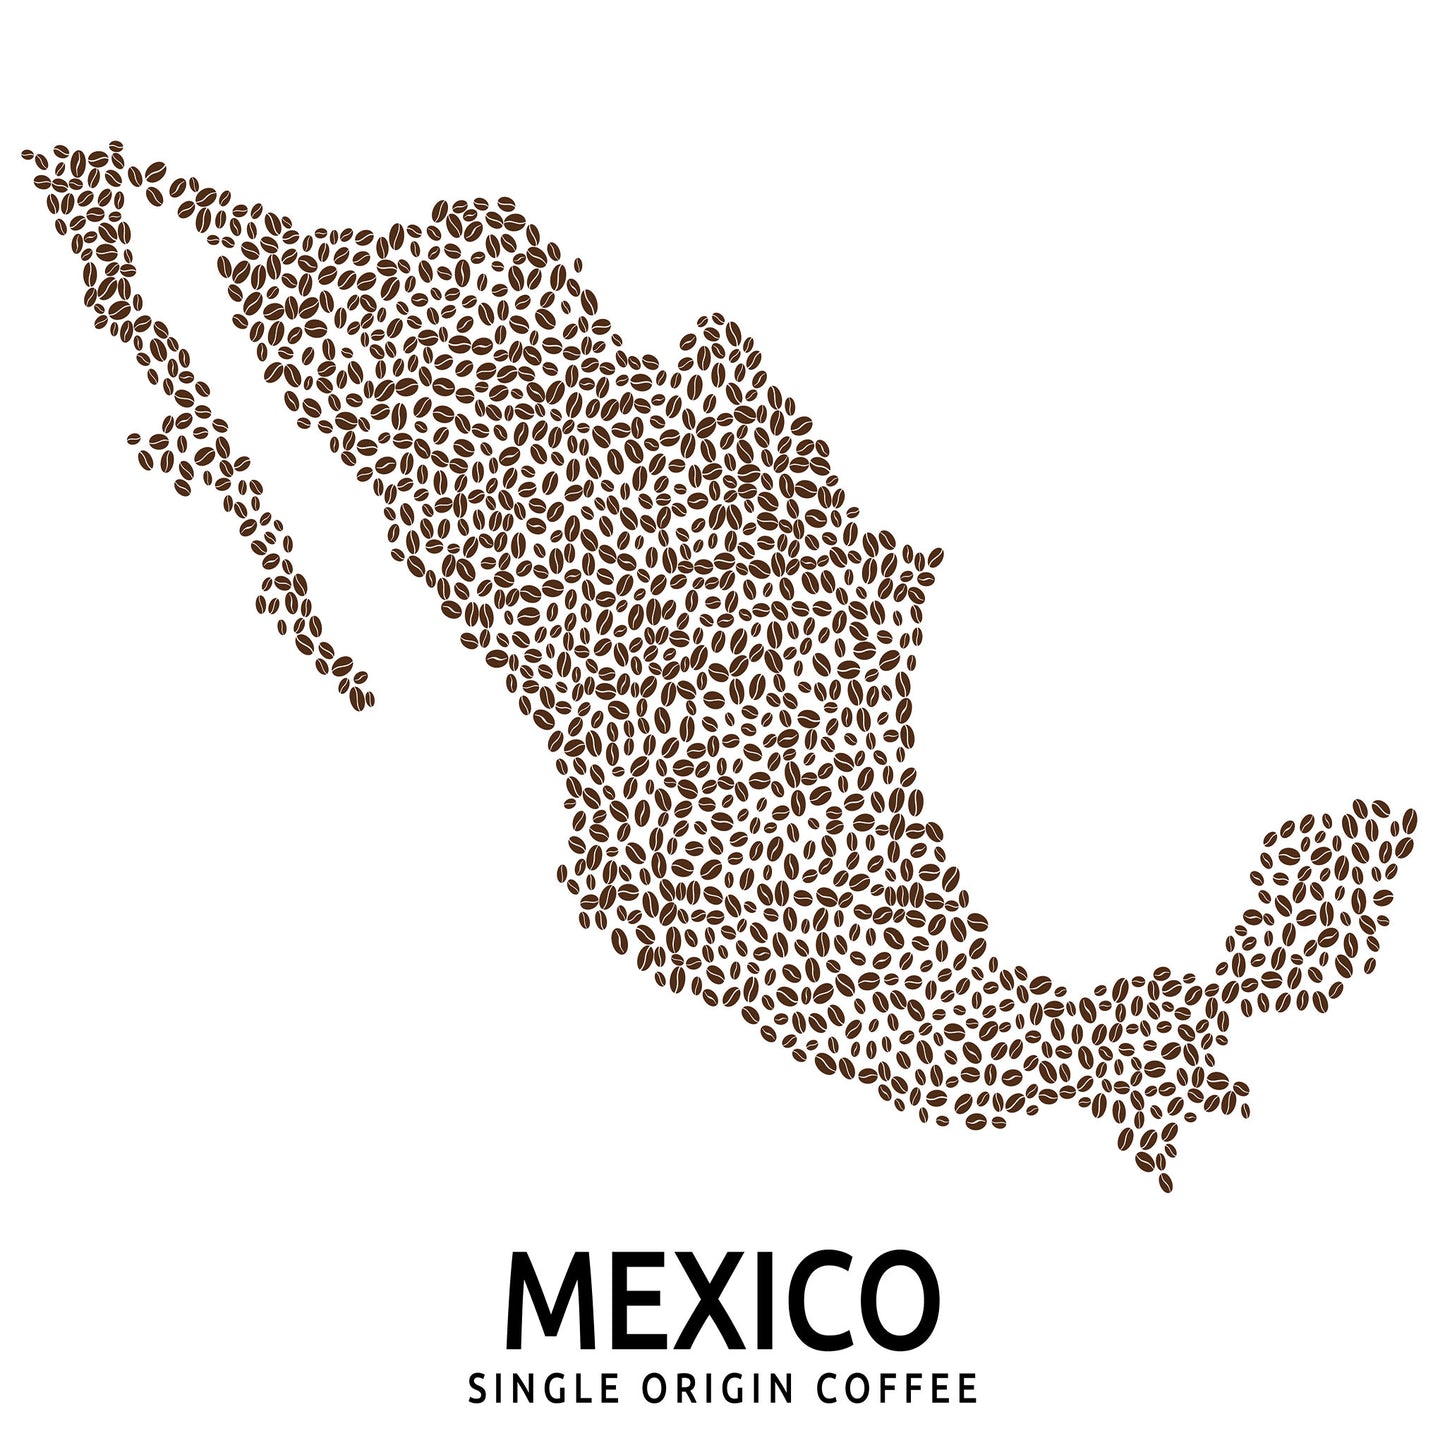 Mexico Single Origin Coffee